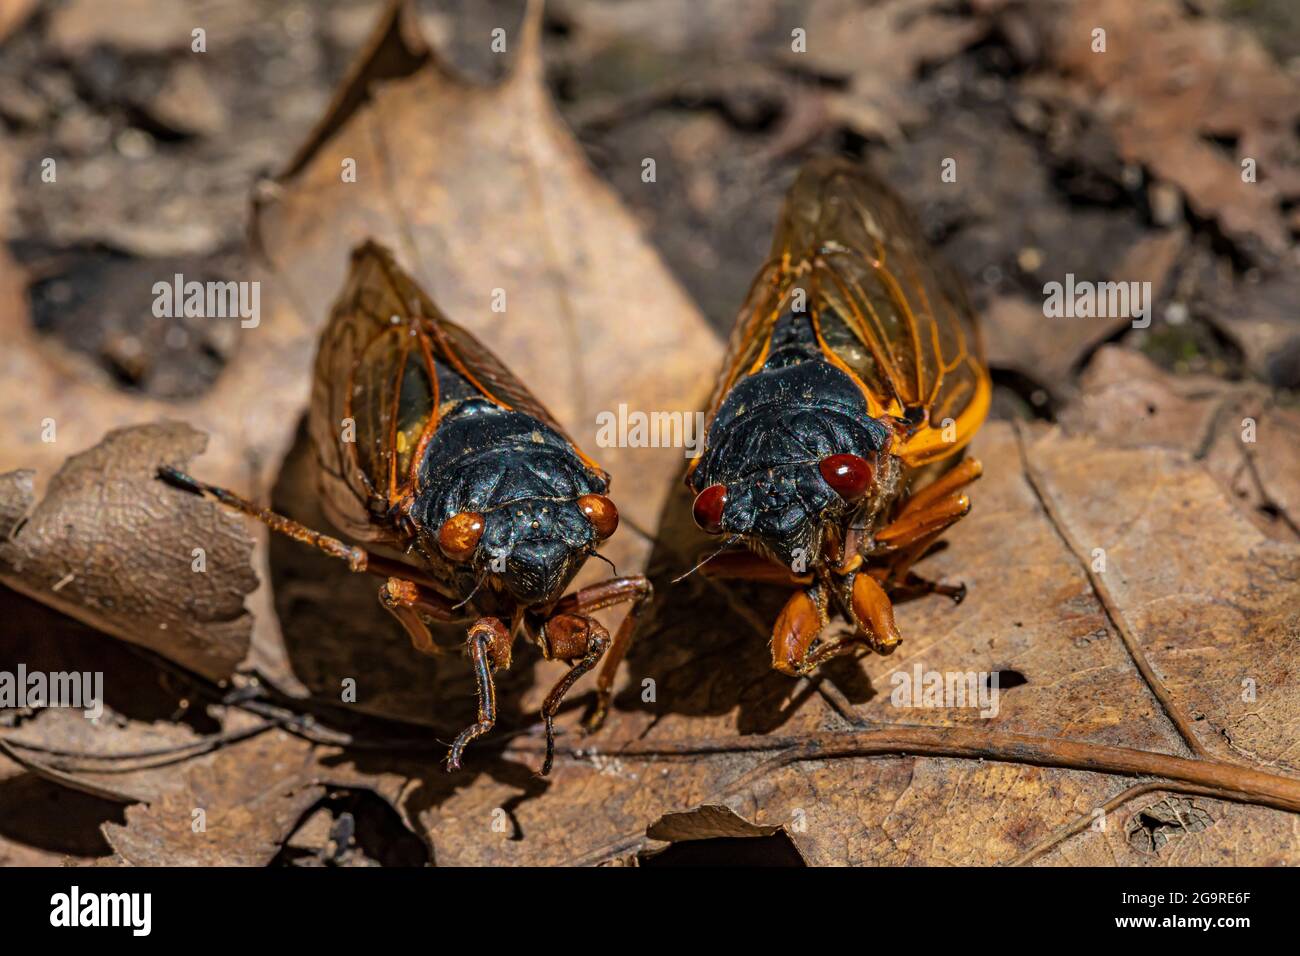 Les cigadas mortes de la couvée X, une Cicada de 17 ans, Magicicada sp., ont vu le jour en juin 2021 dans la réserve naturelle de Cherry Hill près d'Ann Arbor et Ypsilanti, Michiga Banque D'Images